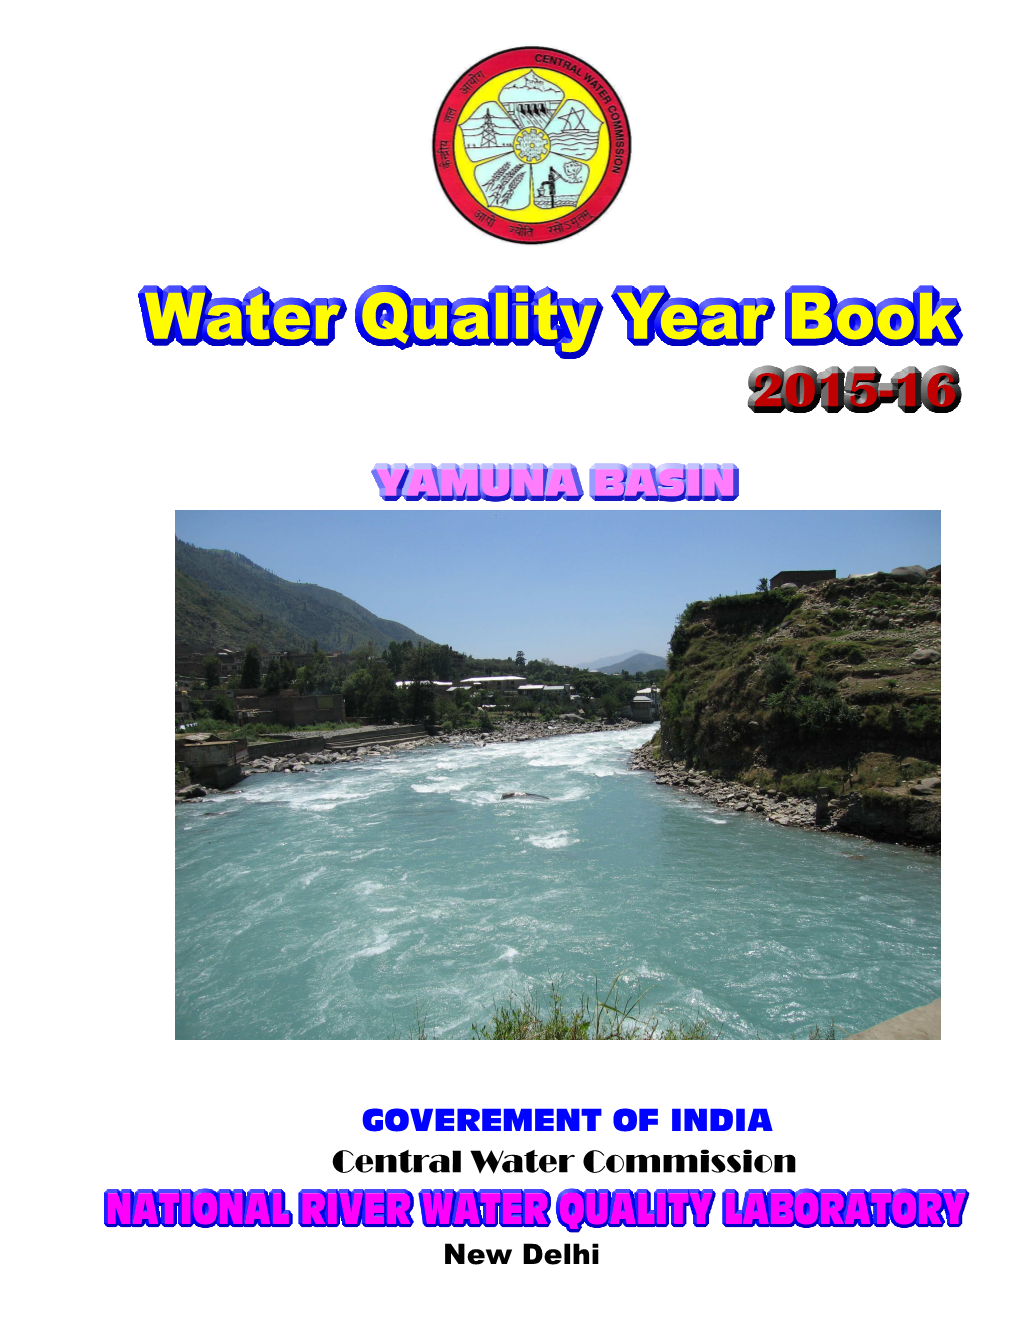 WATER QUALITY YEAR BOOK Yamuna Basin 2015-2016